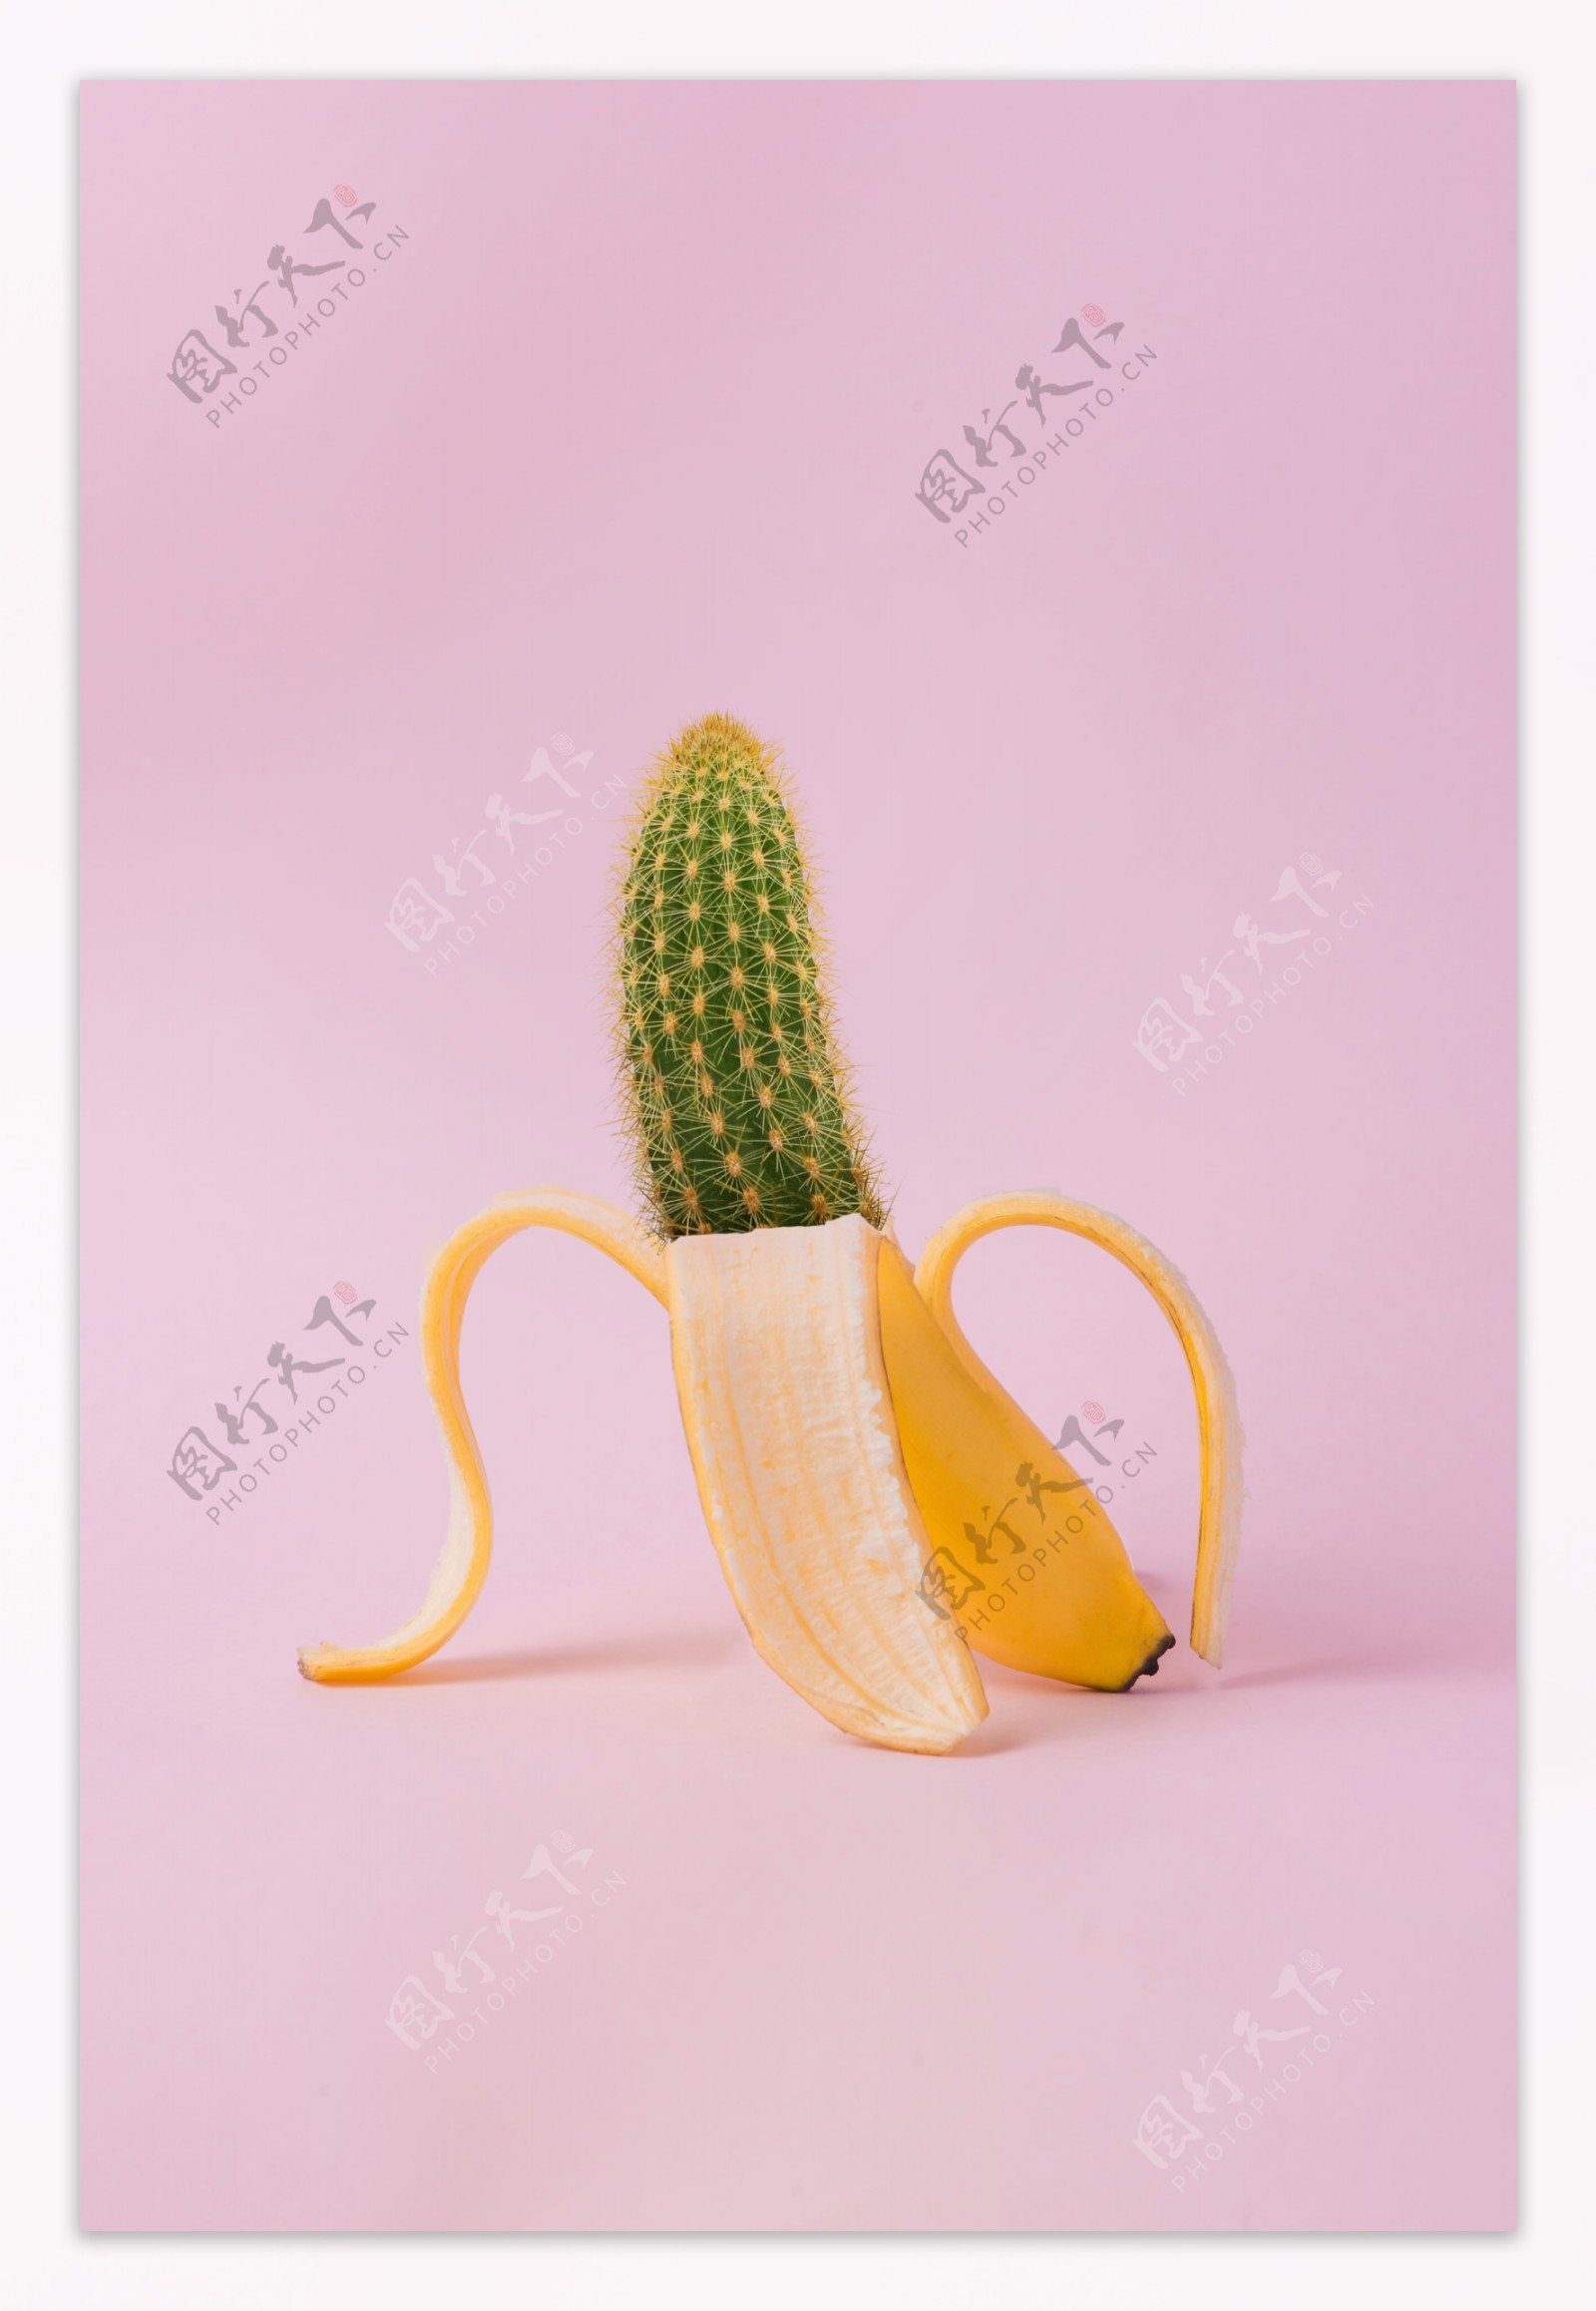 仙人掌香蕉创意